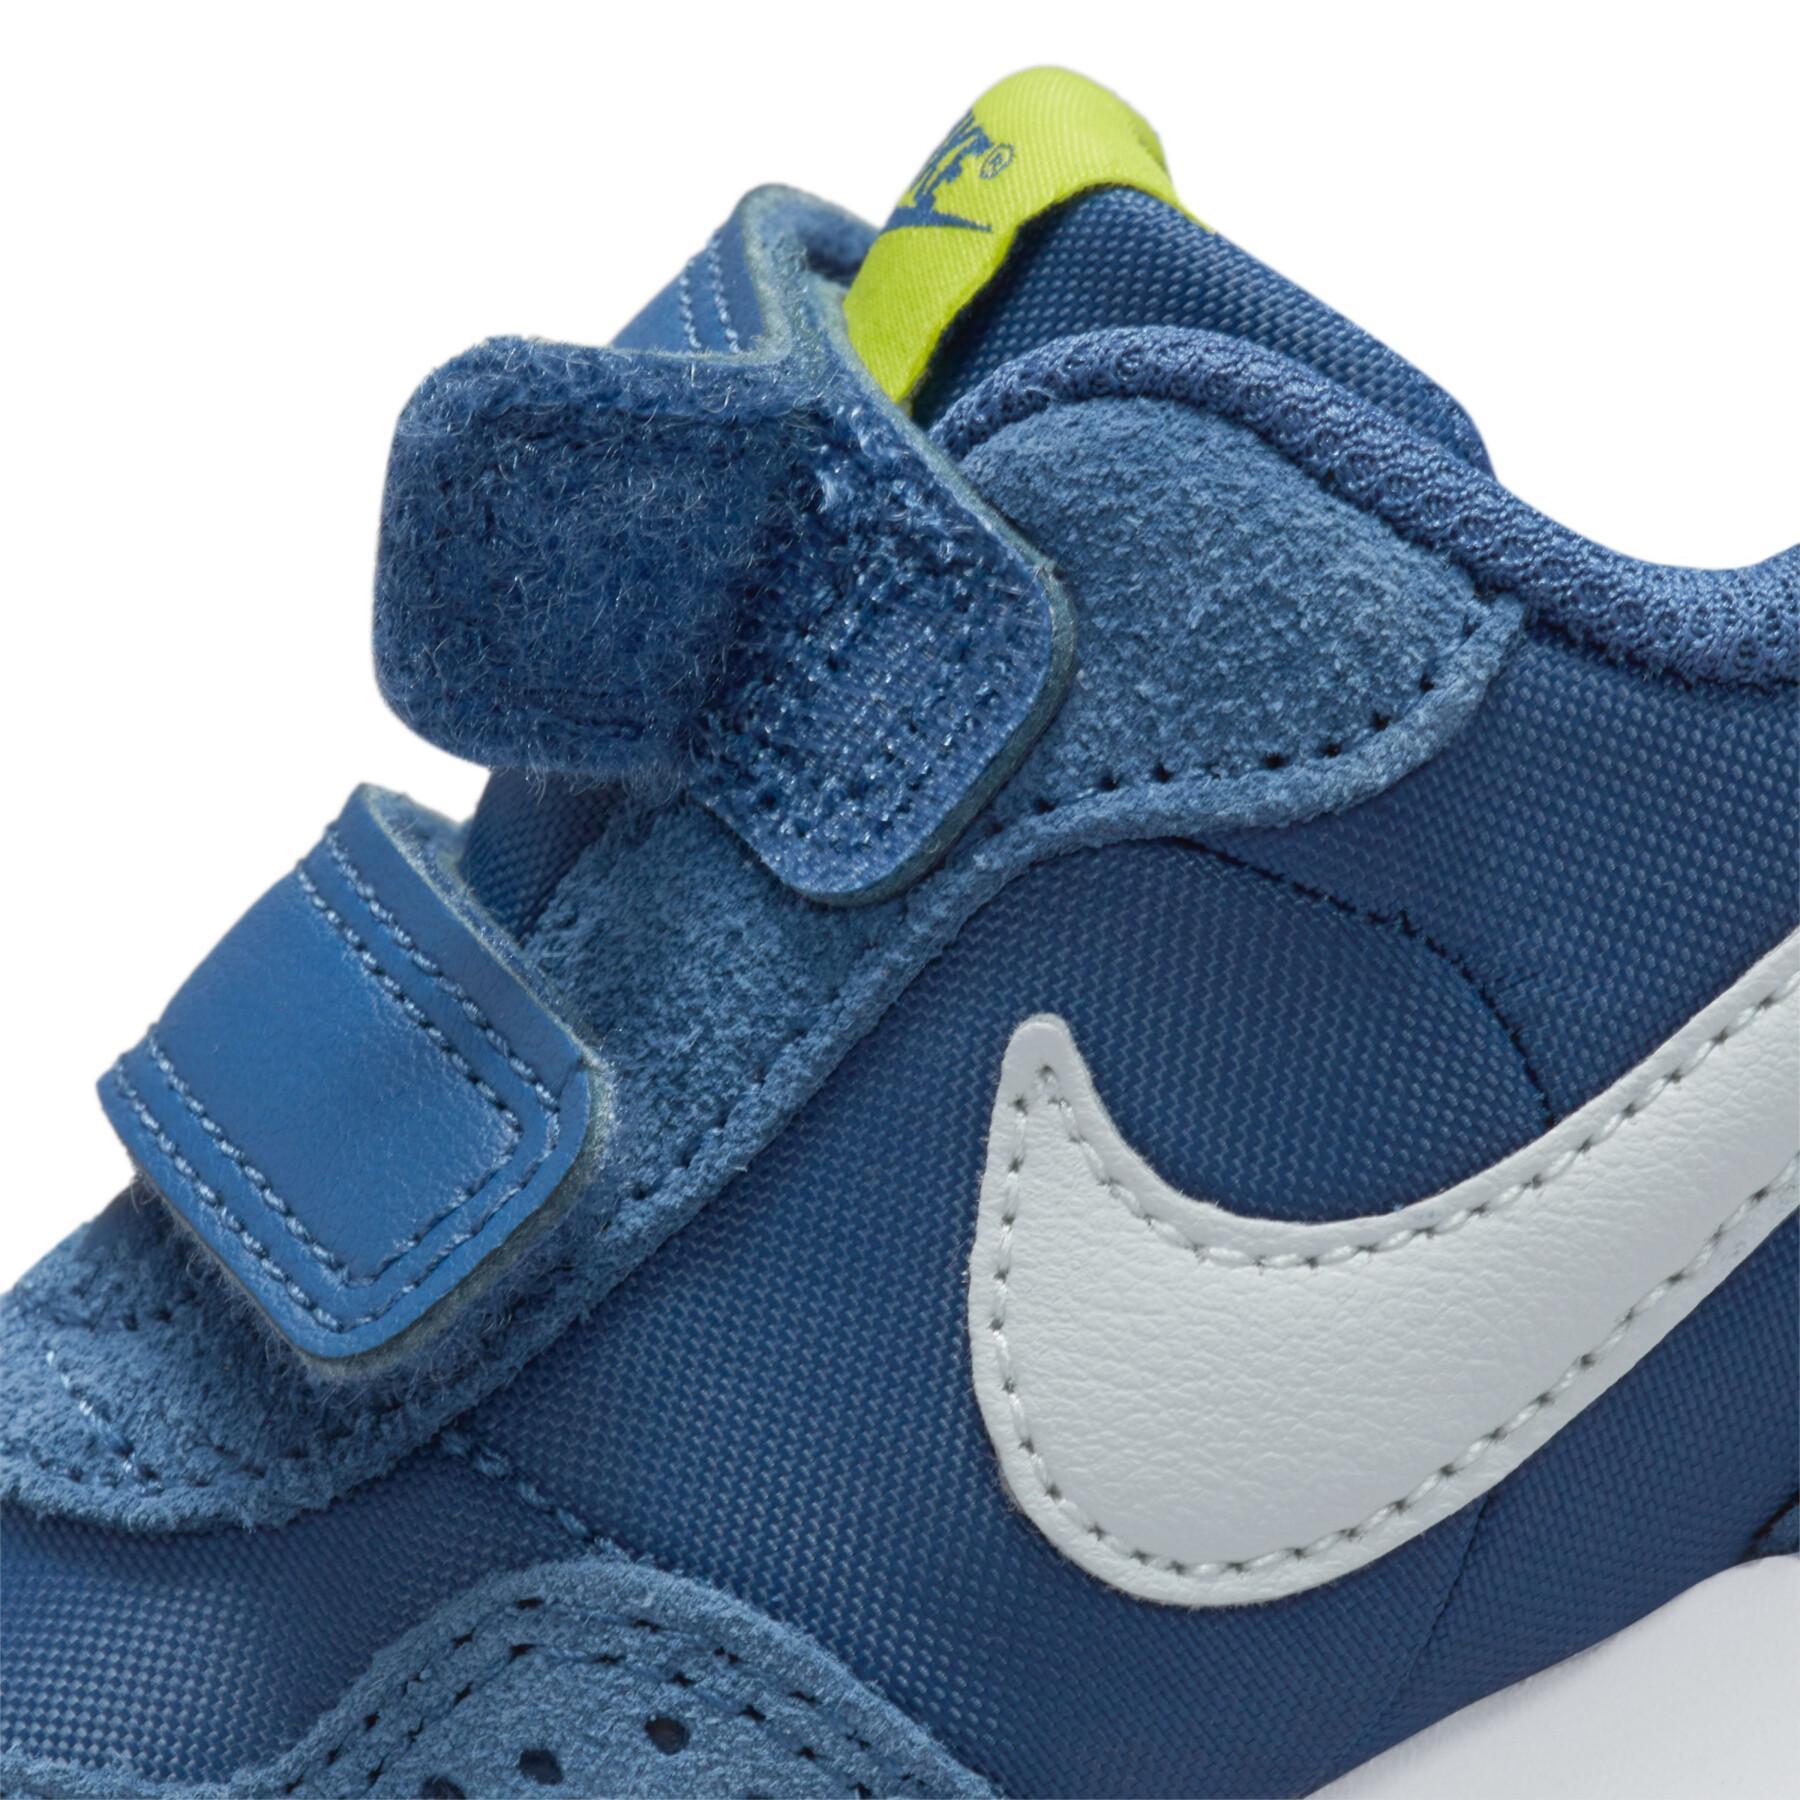 Sportschoenen voor babyjongens Nike Valiant